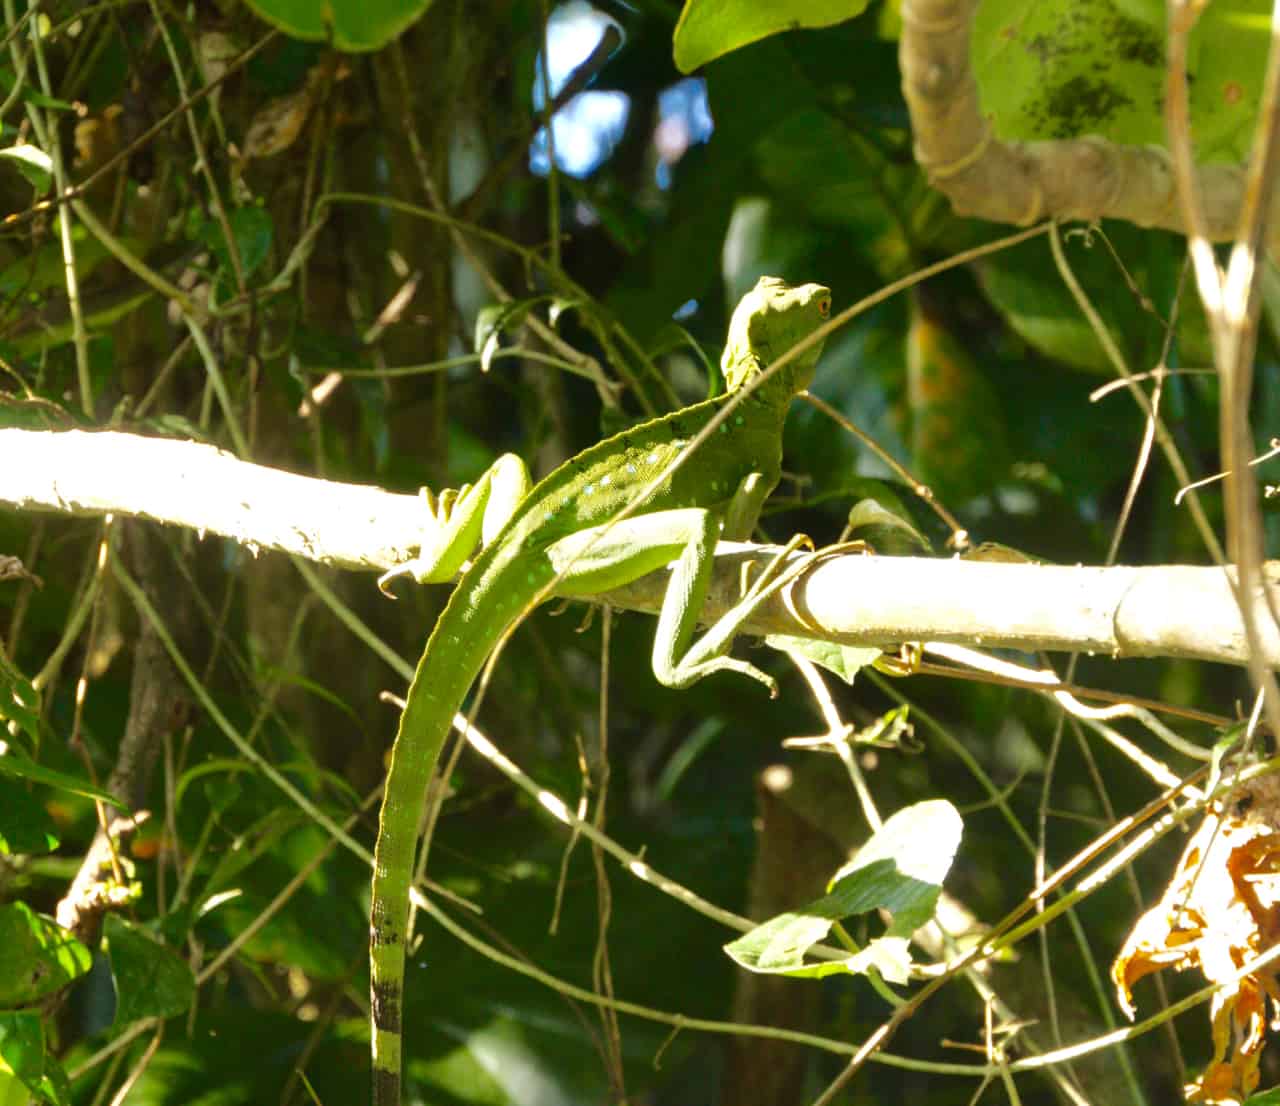  Un basilisco verde femmina poggia su un ramo a Tortuguero, uno dei parchi più biodiverse in Costa Rica.